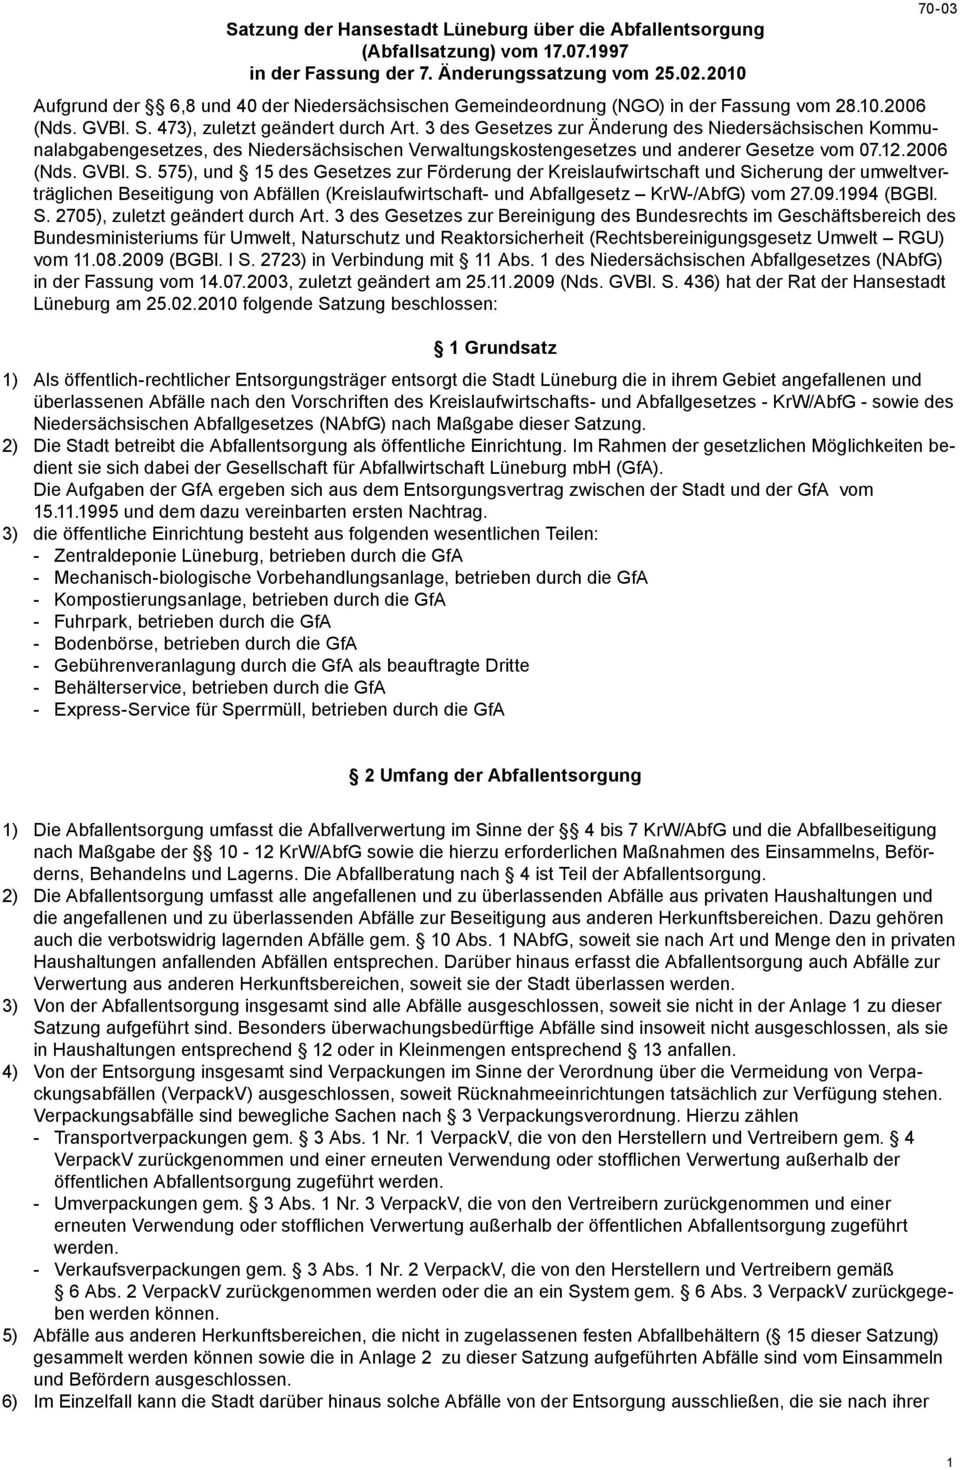 3 des Gesetzes zur Änderung des Niedersächsischen Kommunalabgabengesetzes, des Niedersächsischen Verwaltungskostengesetzes und anderer Gesetze vom 07.12.2006 (Nds. GVBl. S.